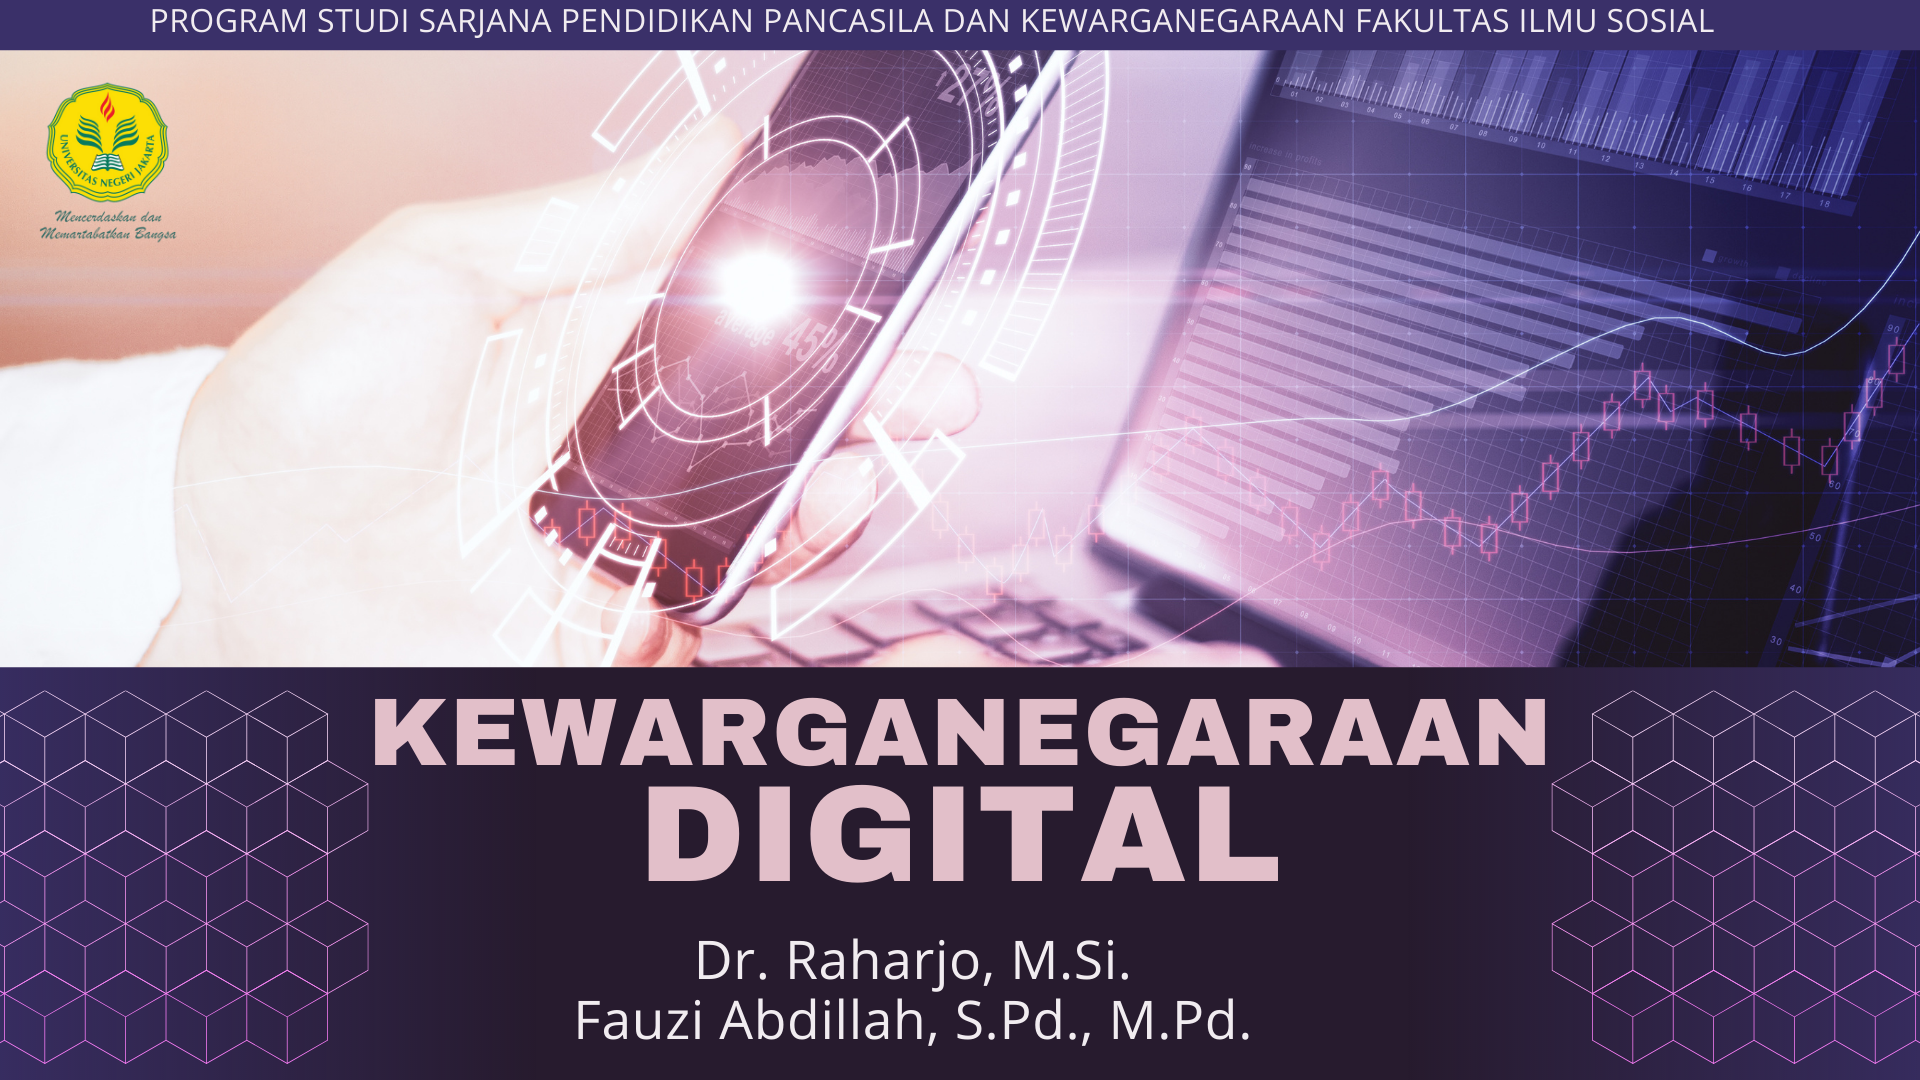 Kewarganegaraan Digital 2020 A (Dr. Raharjo, M.Si. &amp; Fauzi Abdillah, S.Pd., M.Pd.)